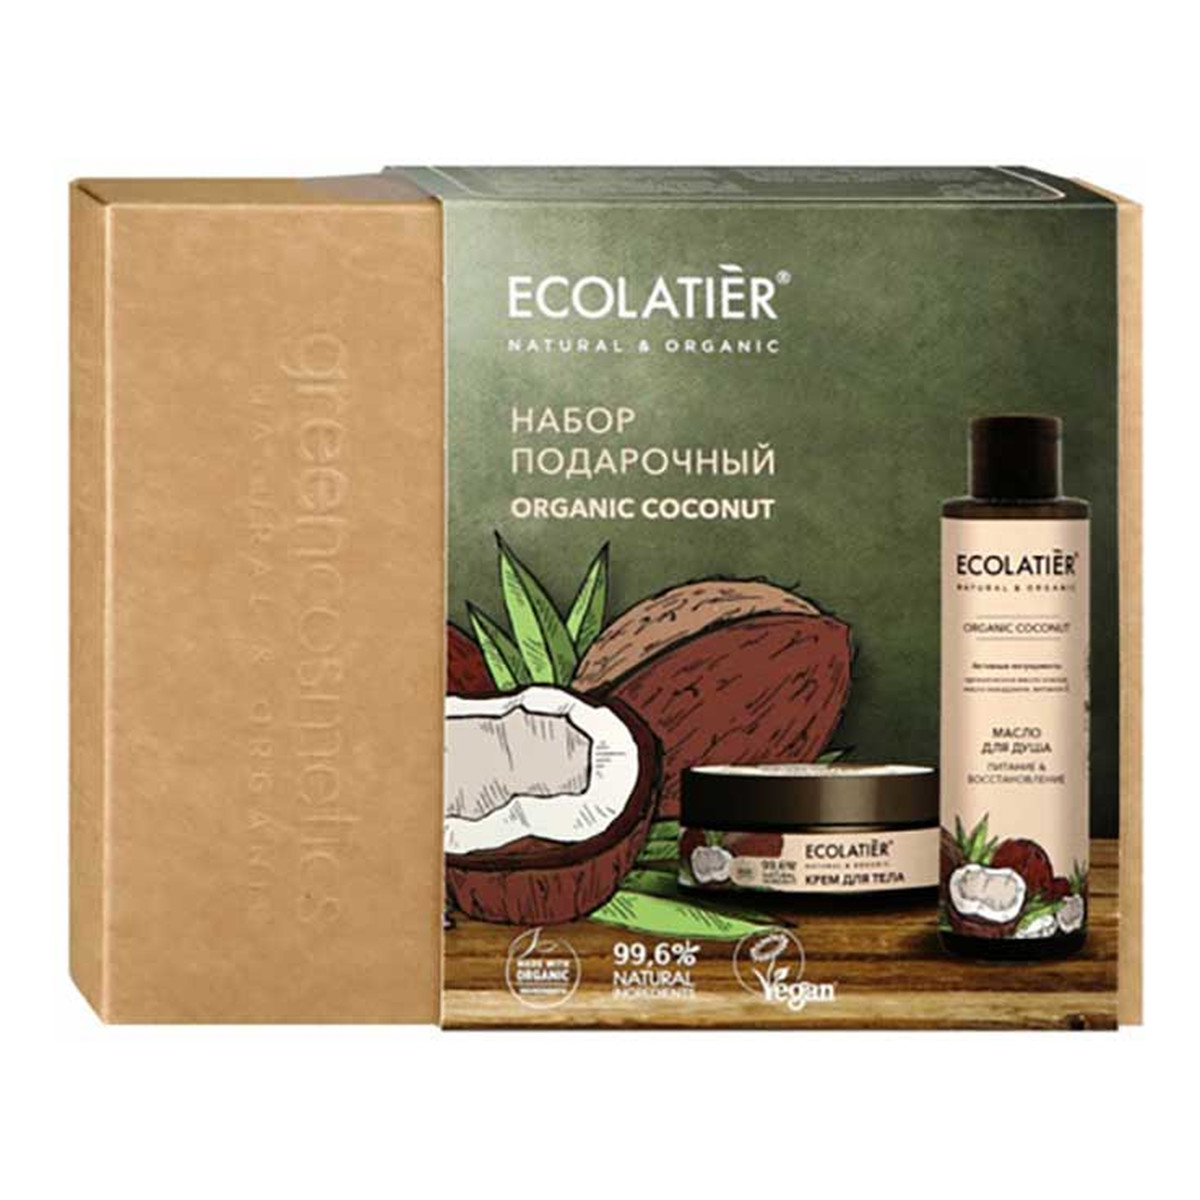 Ecolatier Zestaw podarunkowy Organic Coconut olejek do kąpieli + krem do ciała